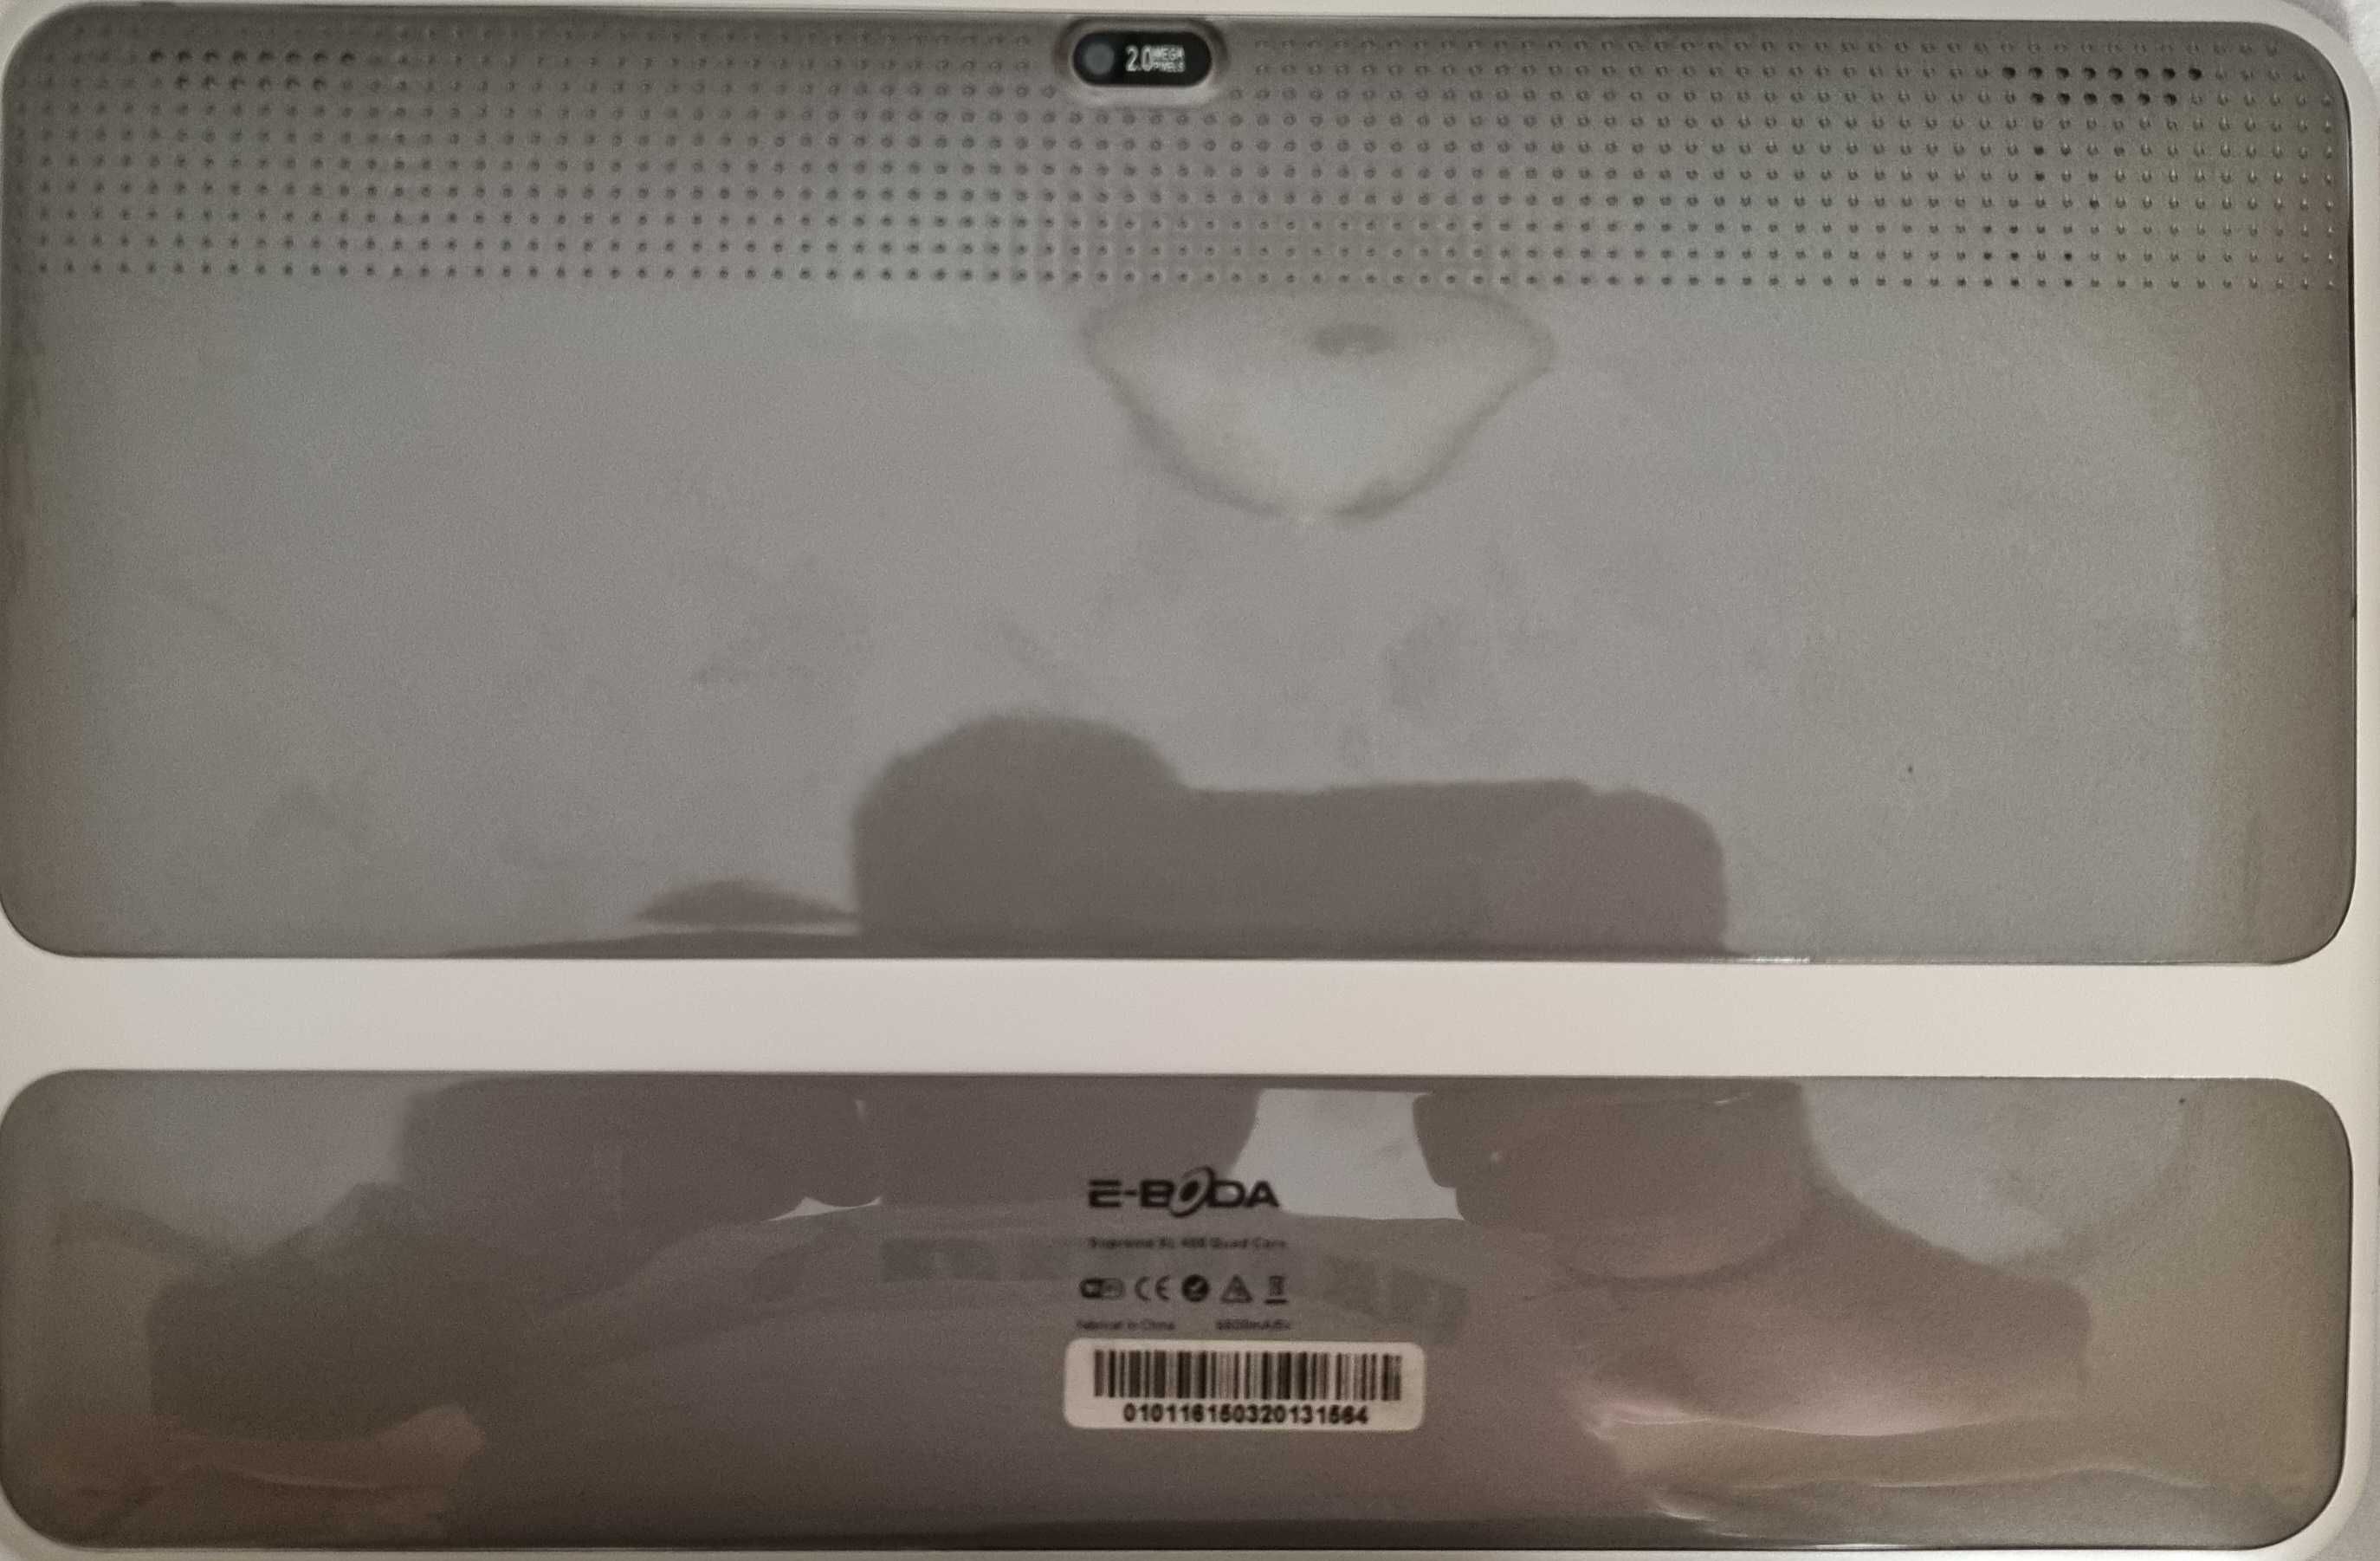 Tabletă E-BODA supreme XL400Quad Core